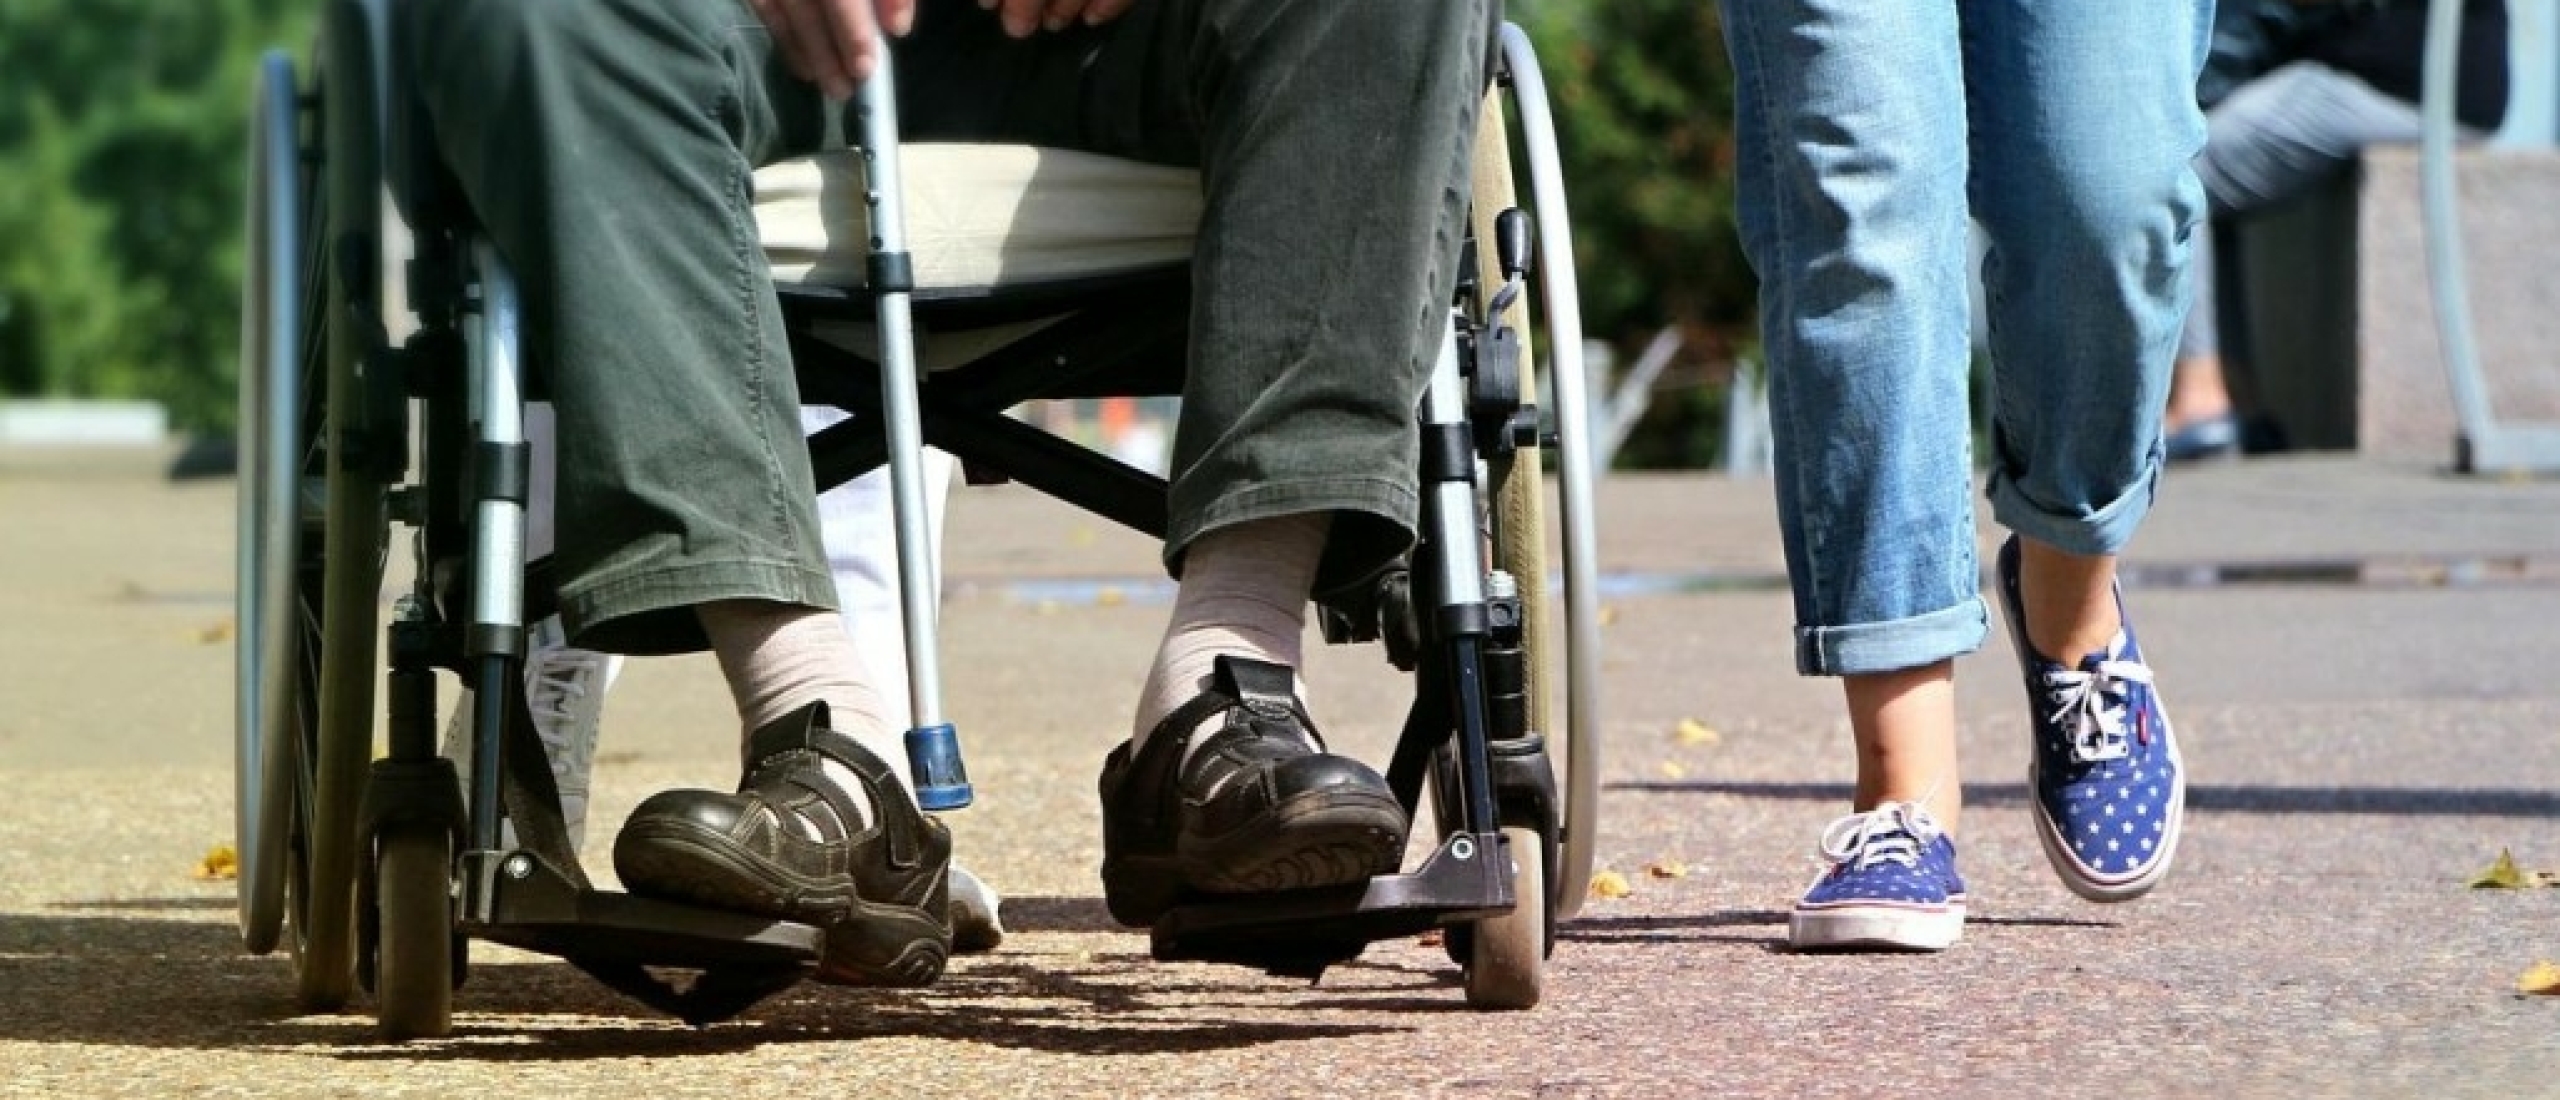 Gezocht: Man in rolstoel met duidelijke visie